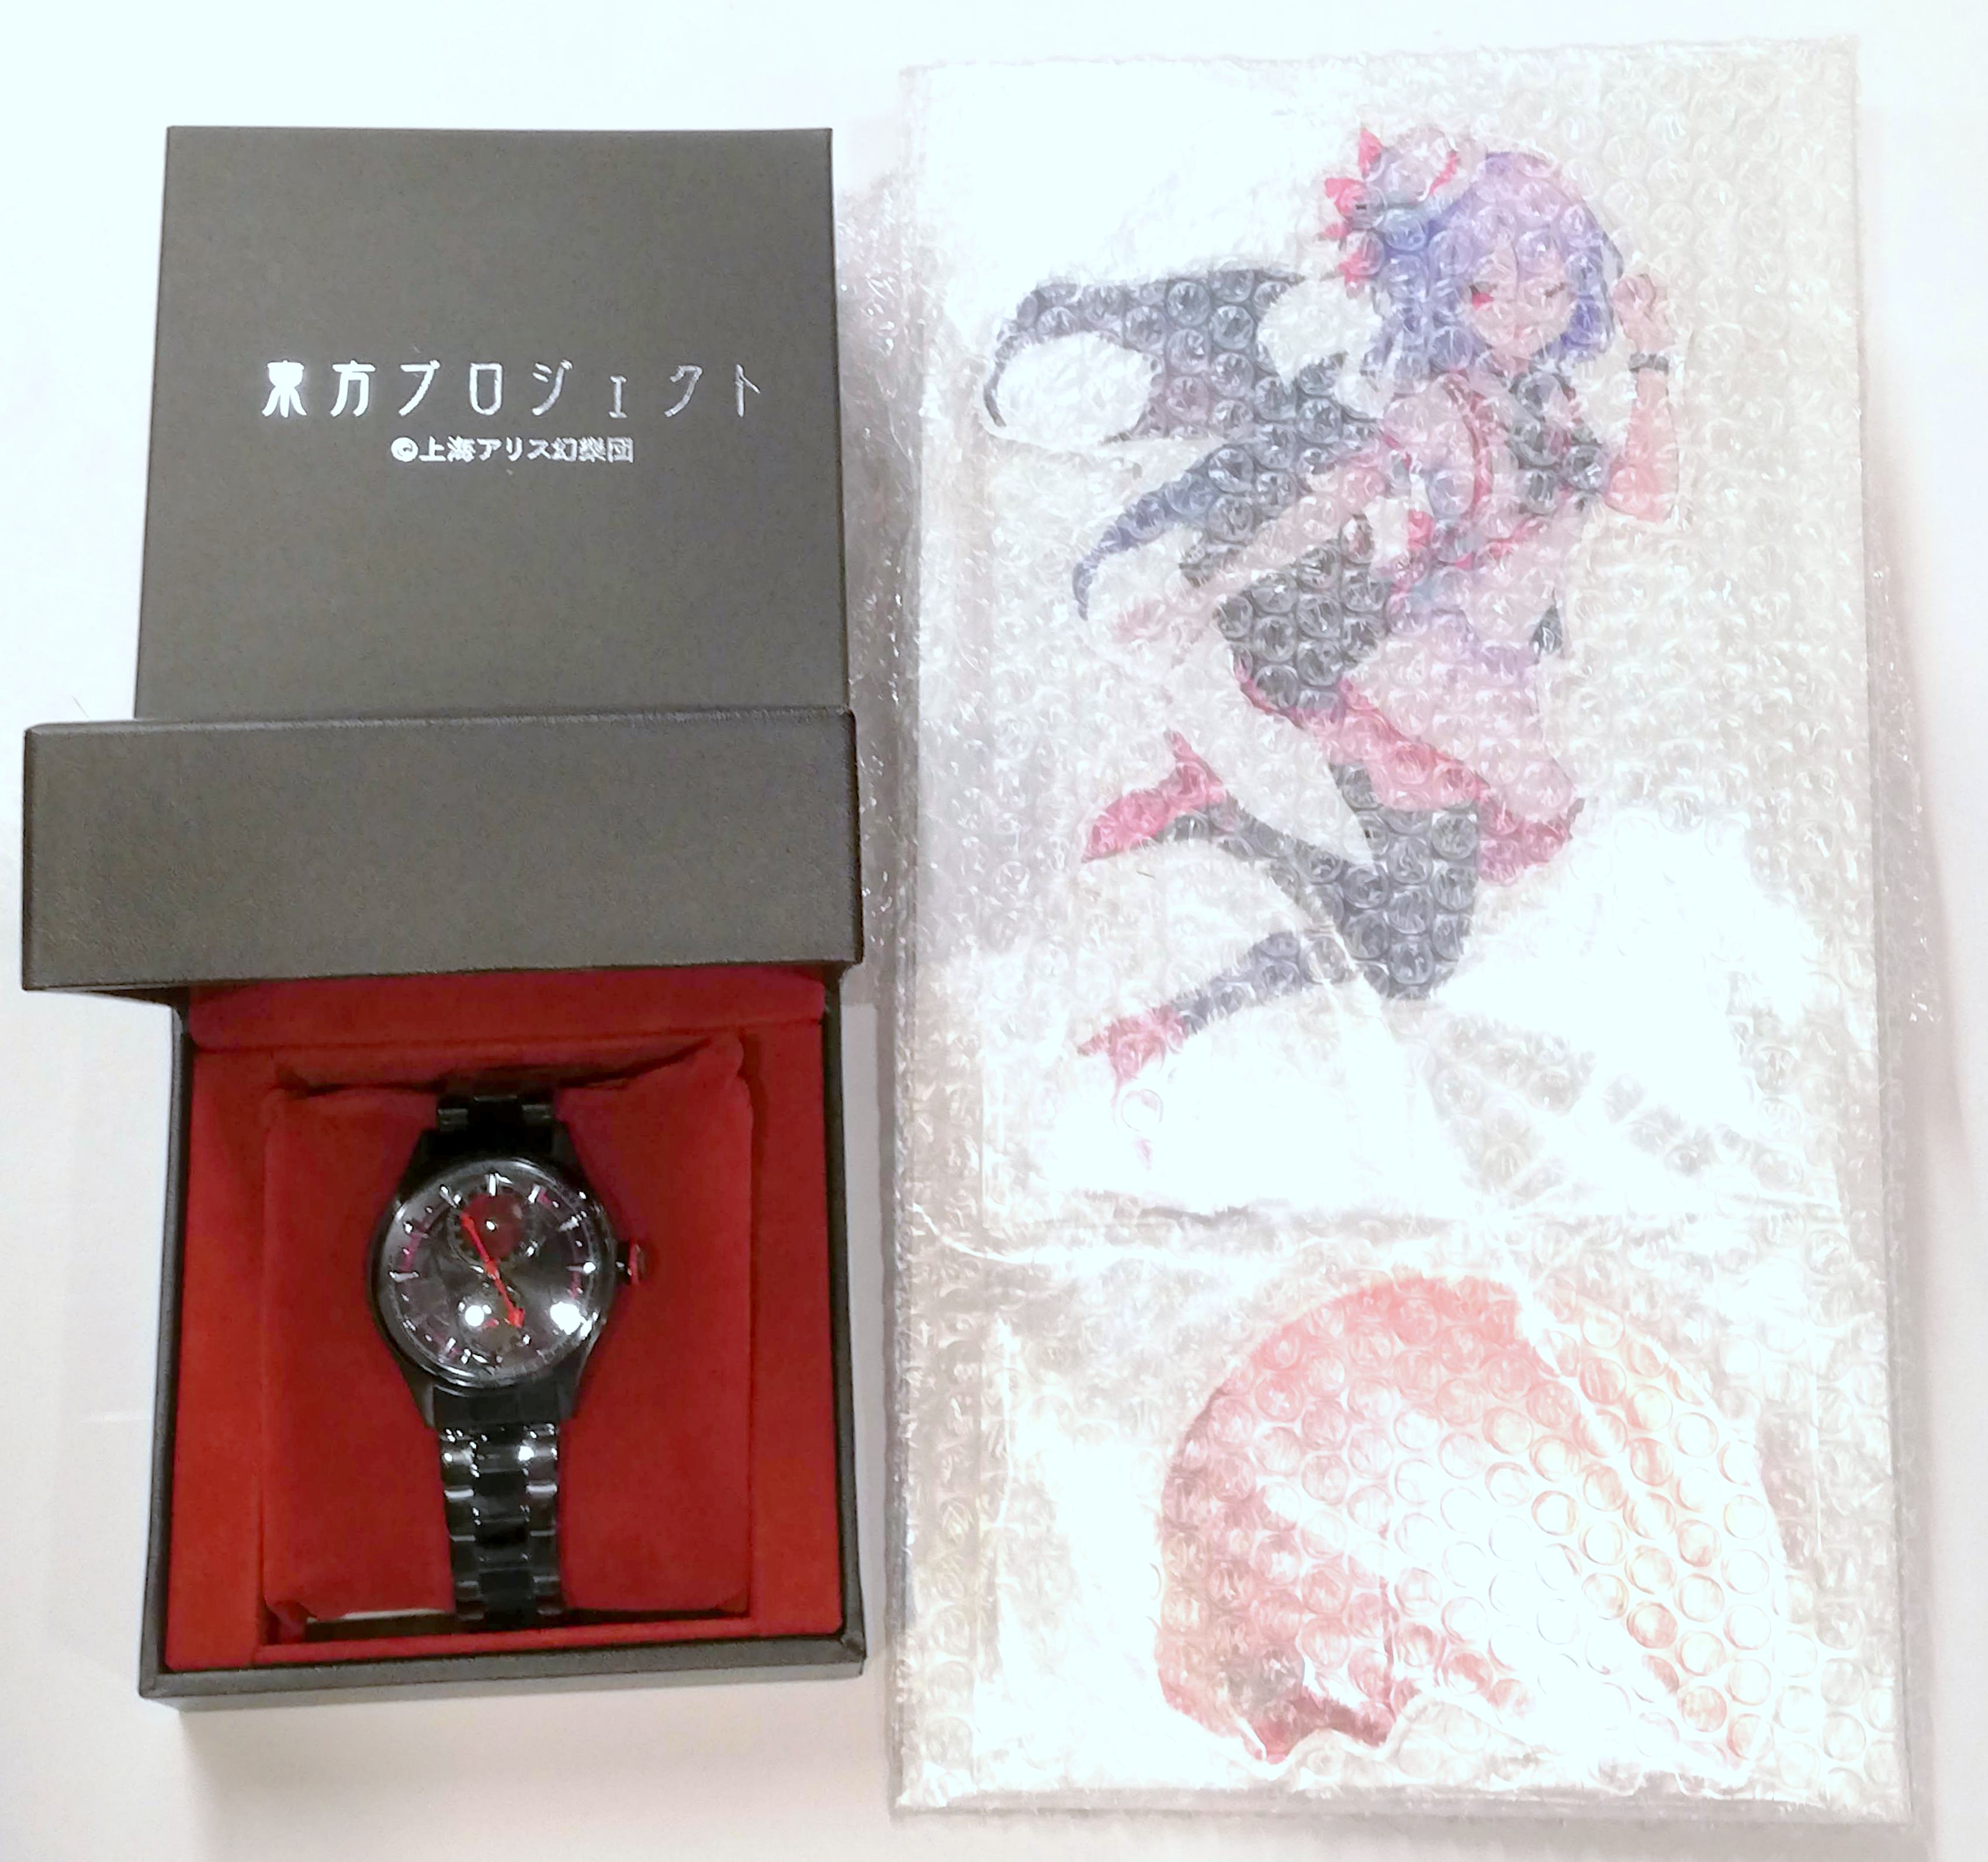 【東方Project】 レミリア スカーレット 腕時計 アクリルスタンド付き紅魔館